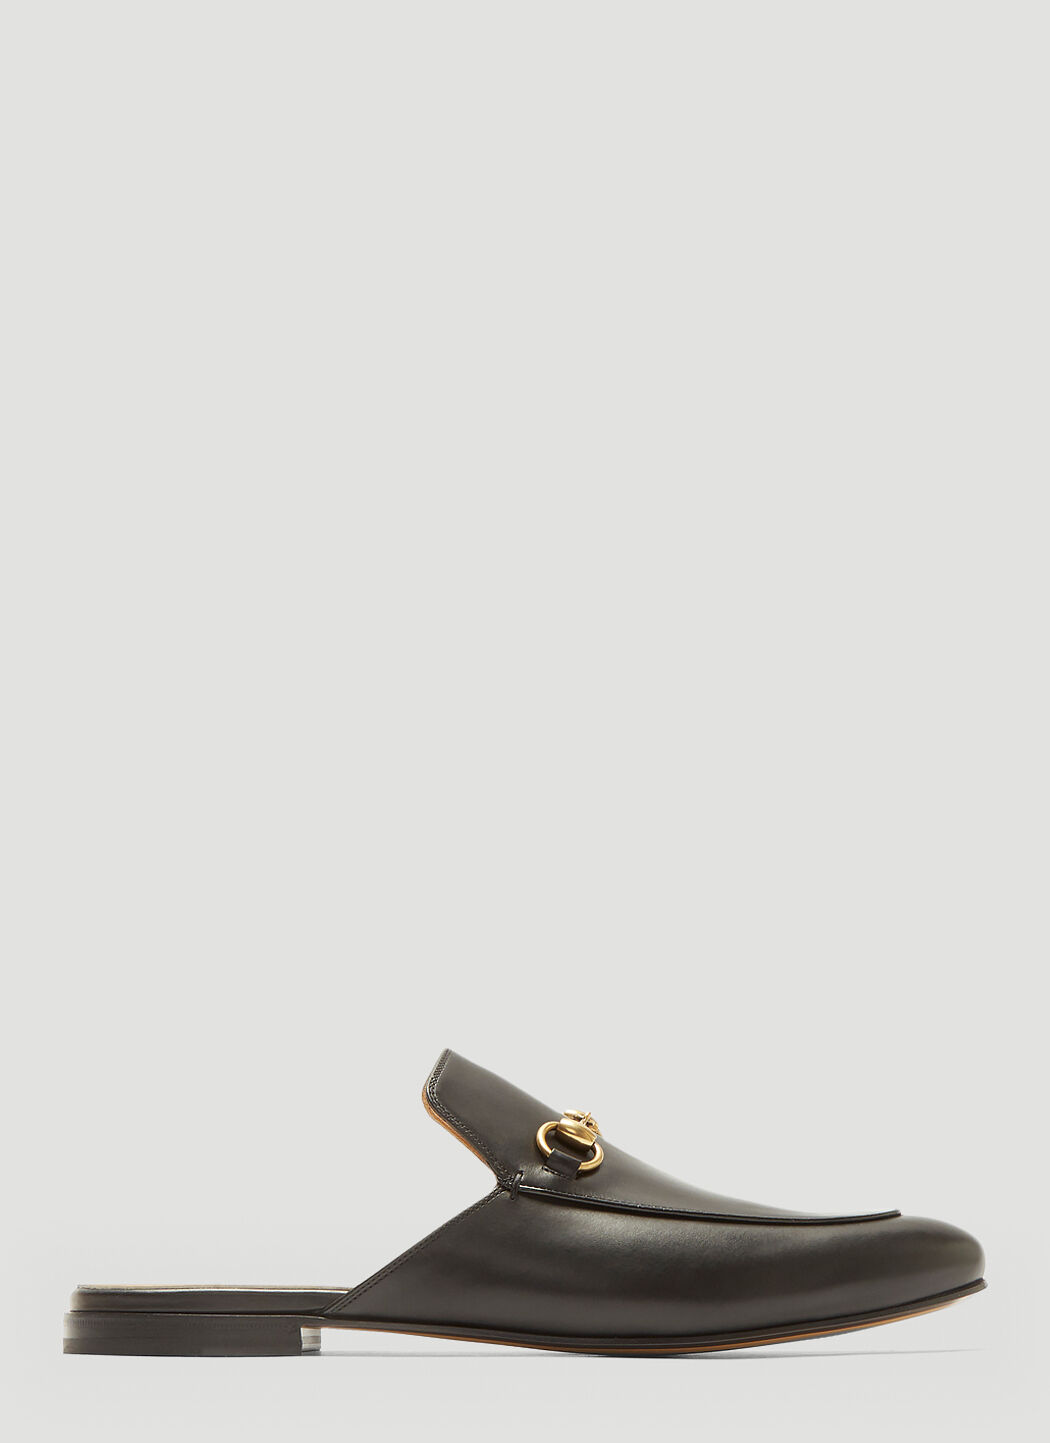 Gucci Horsebit Leather Slipper Shoes Black guc0132039